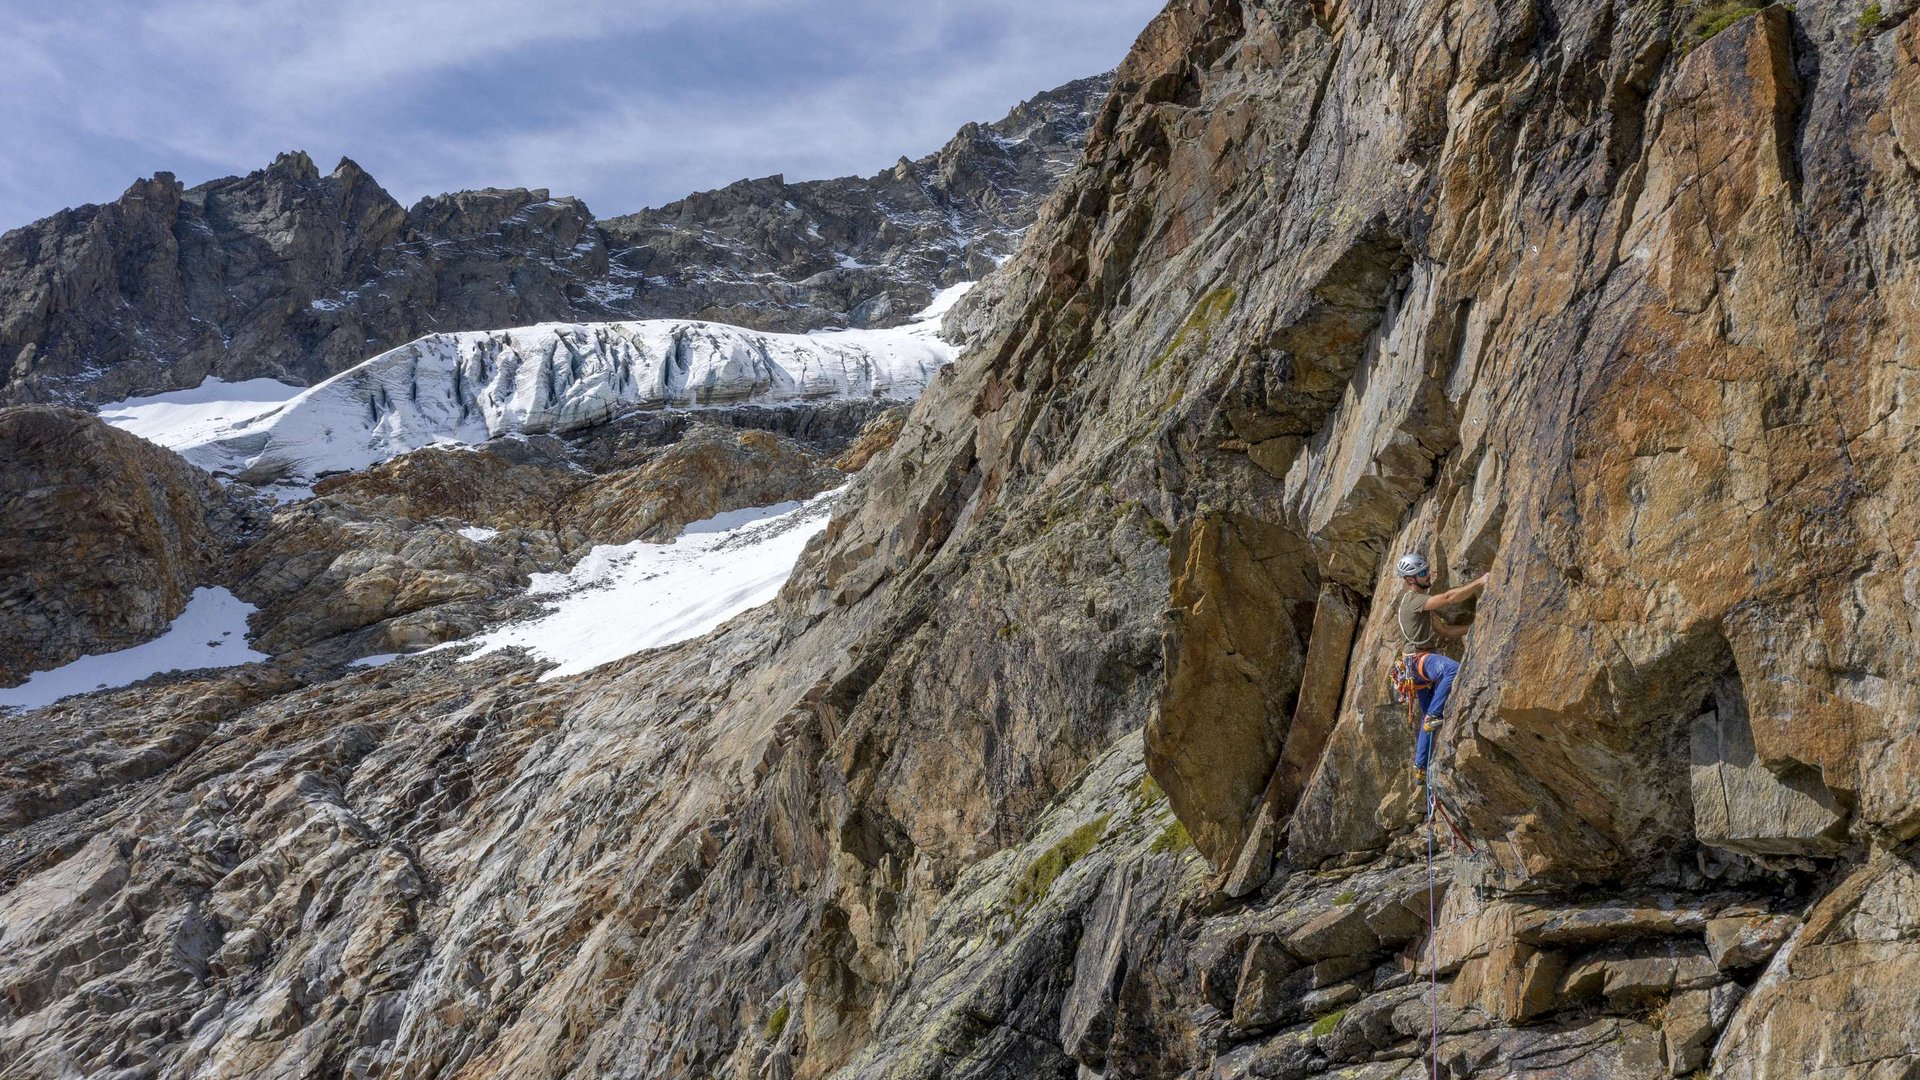 Klettern im Pitztal: Adrenalin und Nervenkitzel